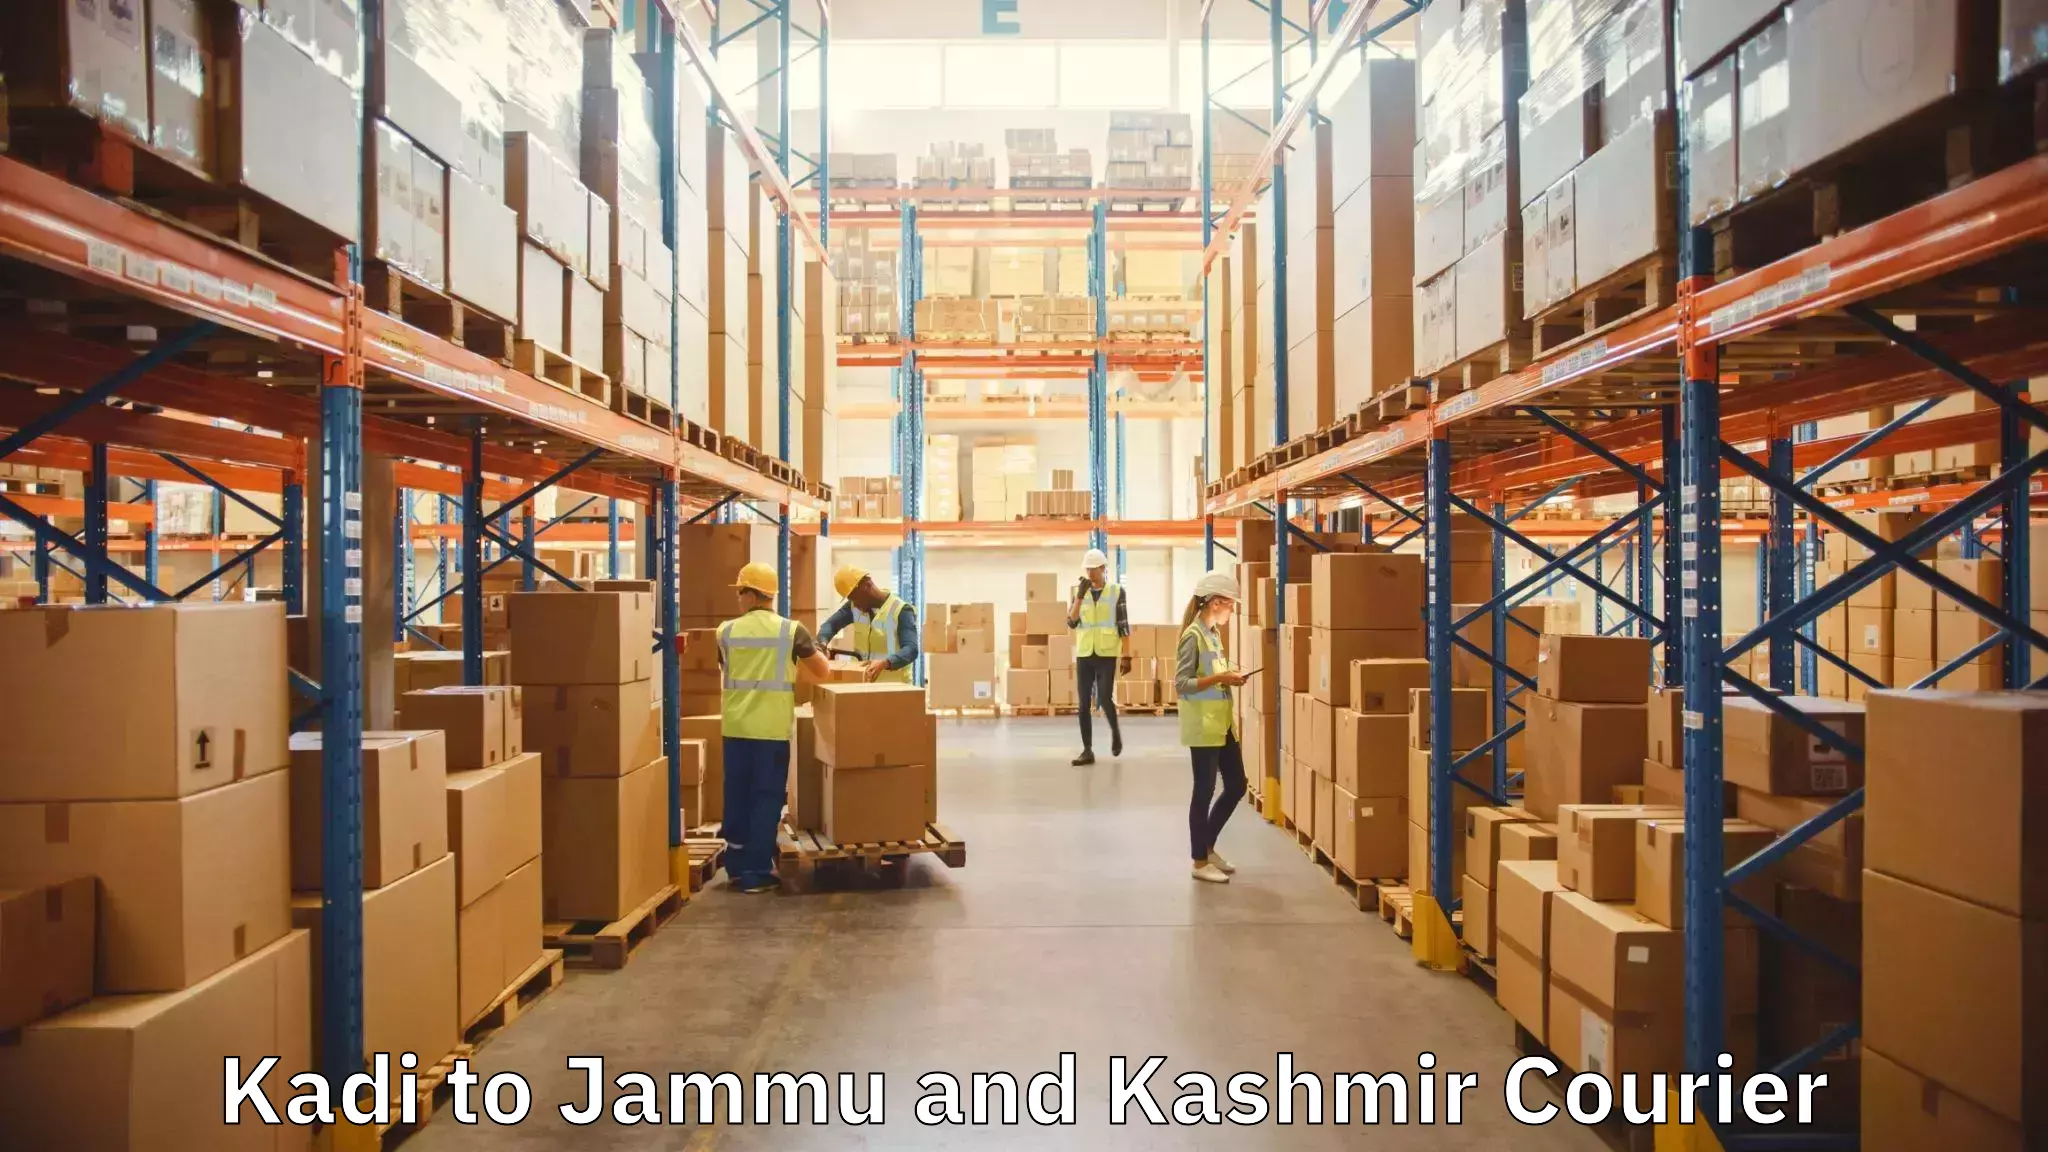 Furniture transport professionals Kadi to Jammu and Kashmir